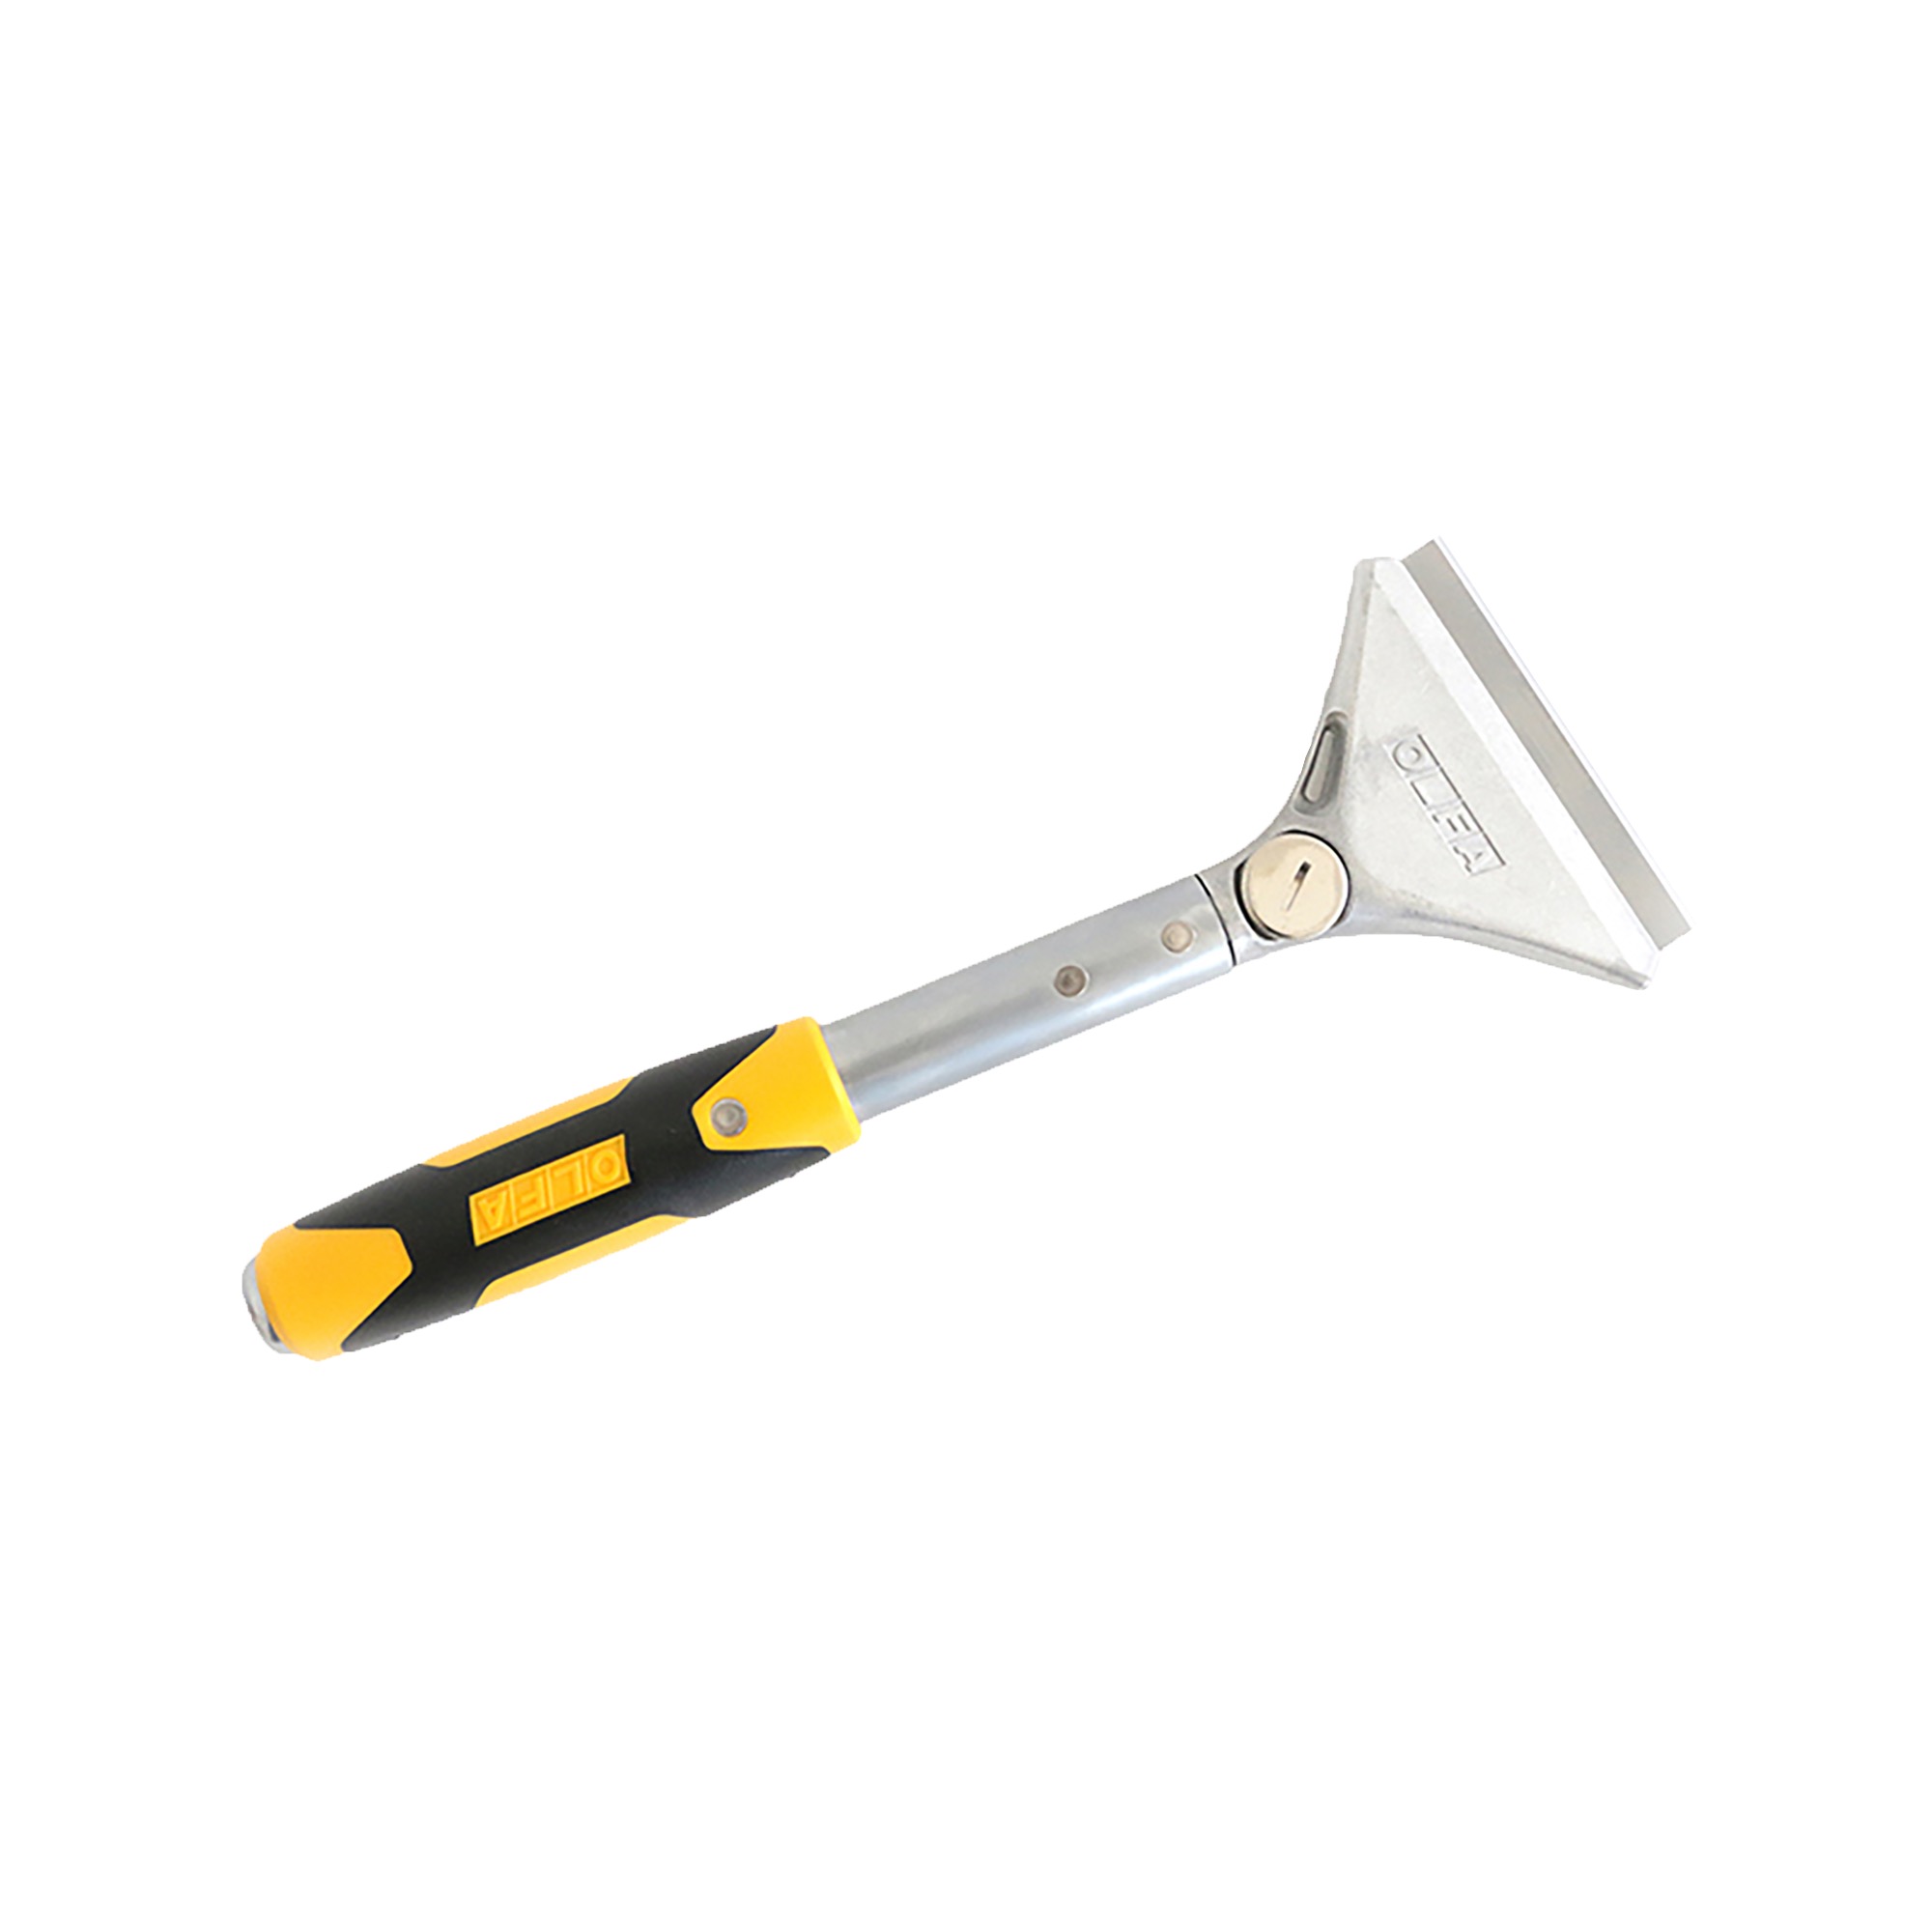 基本の道具工具 スクレーパーカッター | DM-TO003-15-G170 | 道具・工具 | DIY | toolbox